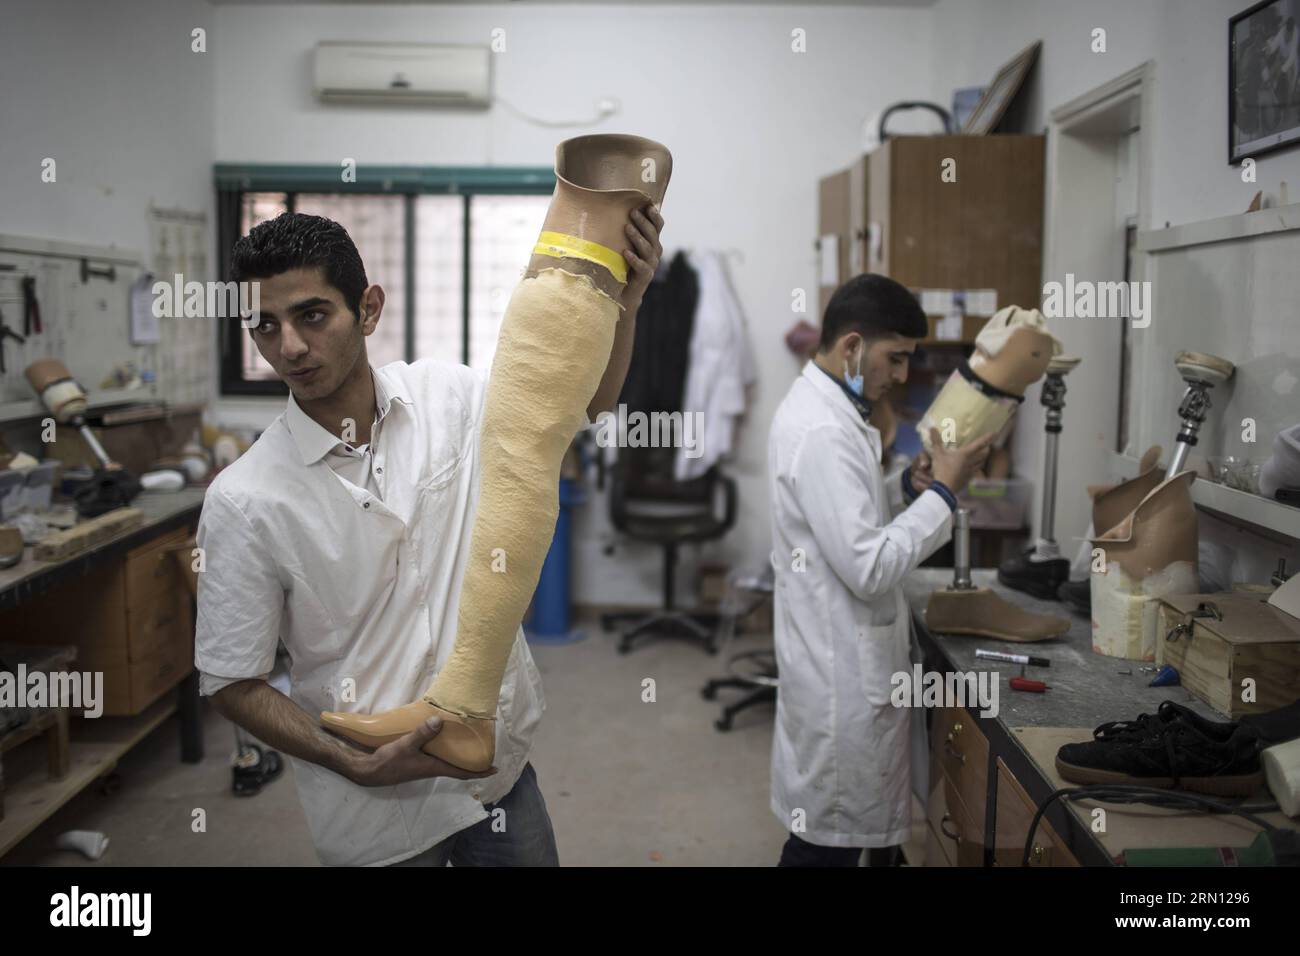 Un membro dello staff palestinese prepara una gamba protesica al Centro Artificial Limits and Polio Centre (ALPC) di Gaza il 30 novembre 2014. L'ALPC è stato istituito nel 1974 e opera con il supporto tecnico della Croce Rossa Internazionale. E' l'unico centro del suo genere nella Striscia di Gaza che fornisce servizi protesici e ortotici gratuiti. ) MIDEAST-GAZA-ARTIFICIAL-LIMMBS WissamxNassar PUBLICATIONxNOTxINxCHN un membro dello staff PALESTINESE prepara una gamba PRESSO IL Centro Artificial Limbs and Polio di Gaza nella città di Gaza IL 30 2014 novembre, The What istituito nel 1974 e opera con il supporto tecnico Foto Stock